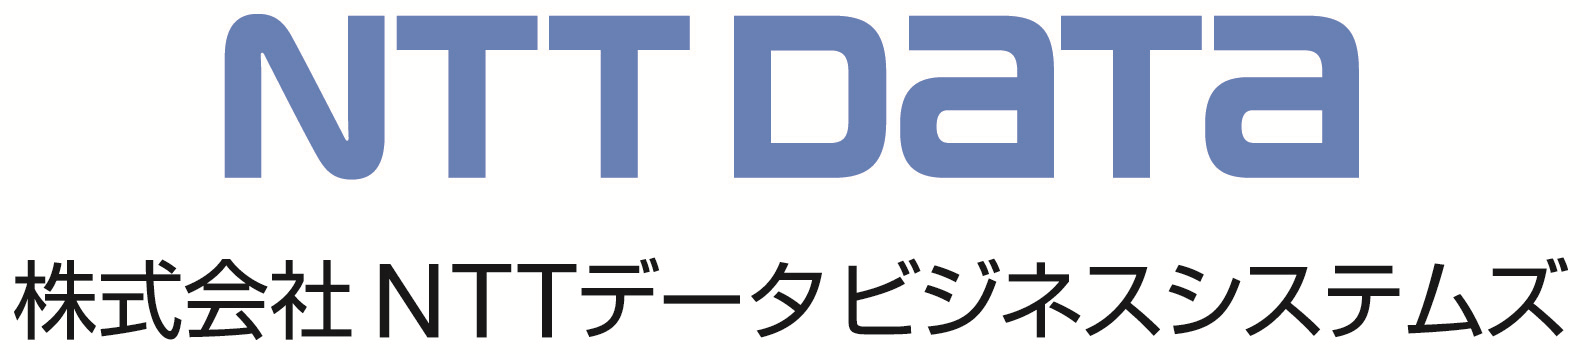 株式会社NTTデータビジネスシステムズ-ロゴ